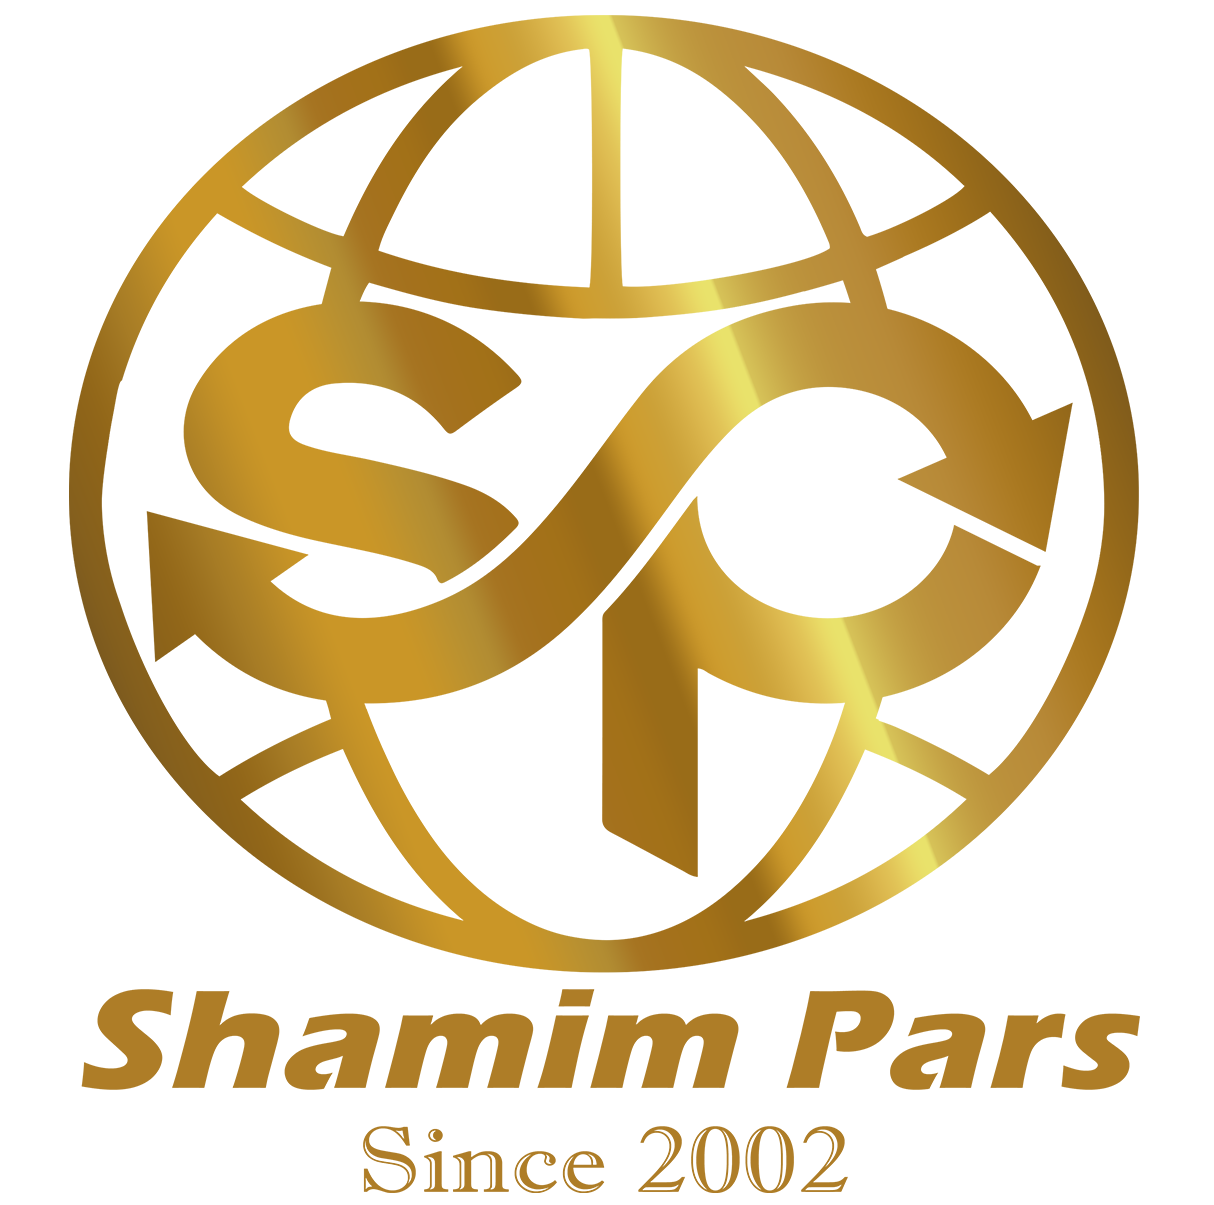 Shamim Pars Co